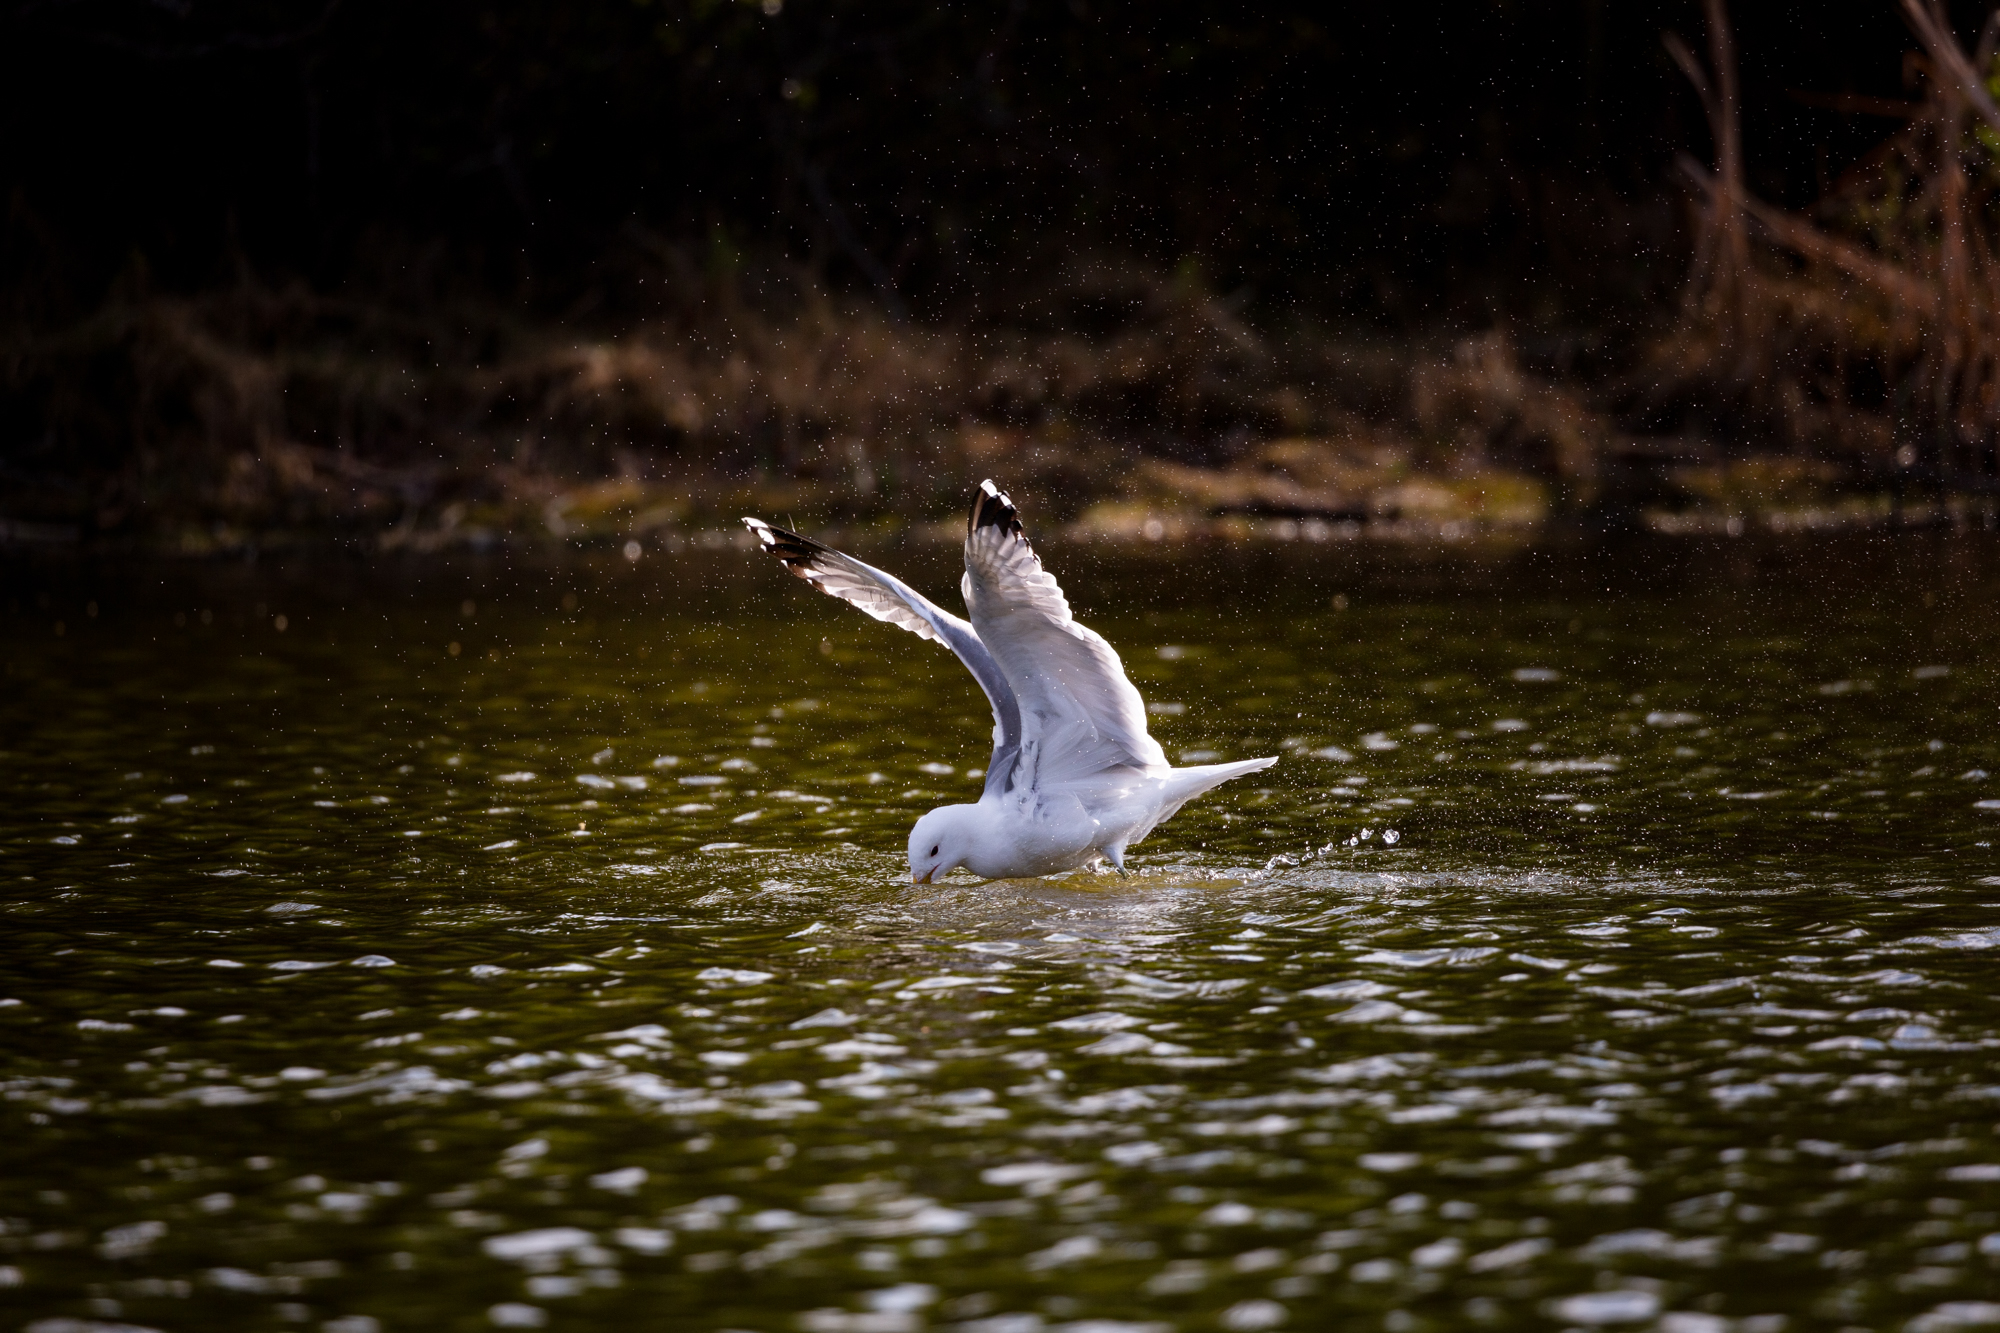 California Gull splashing in the water